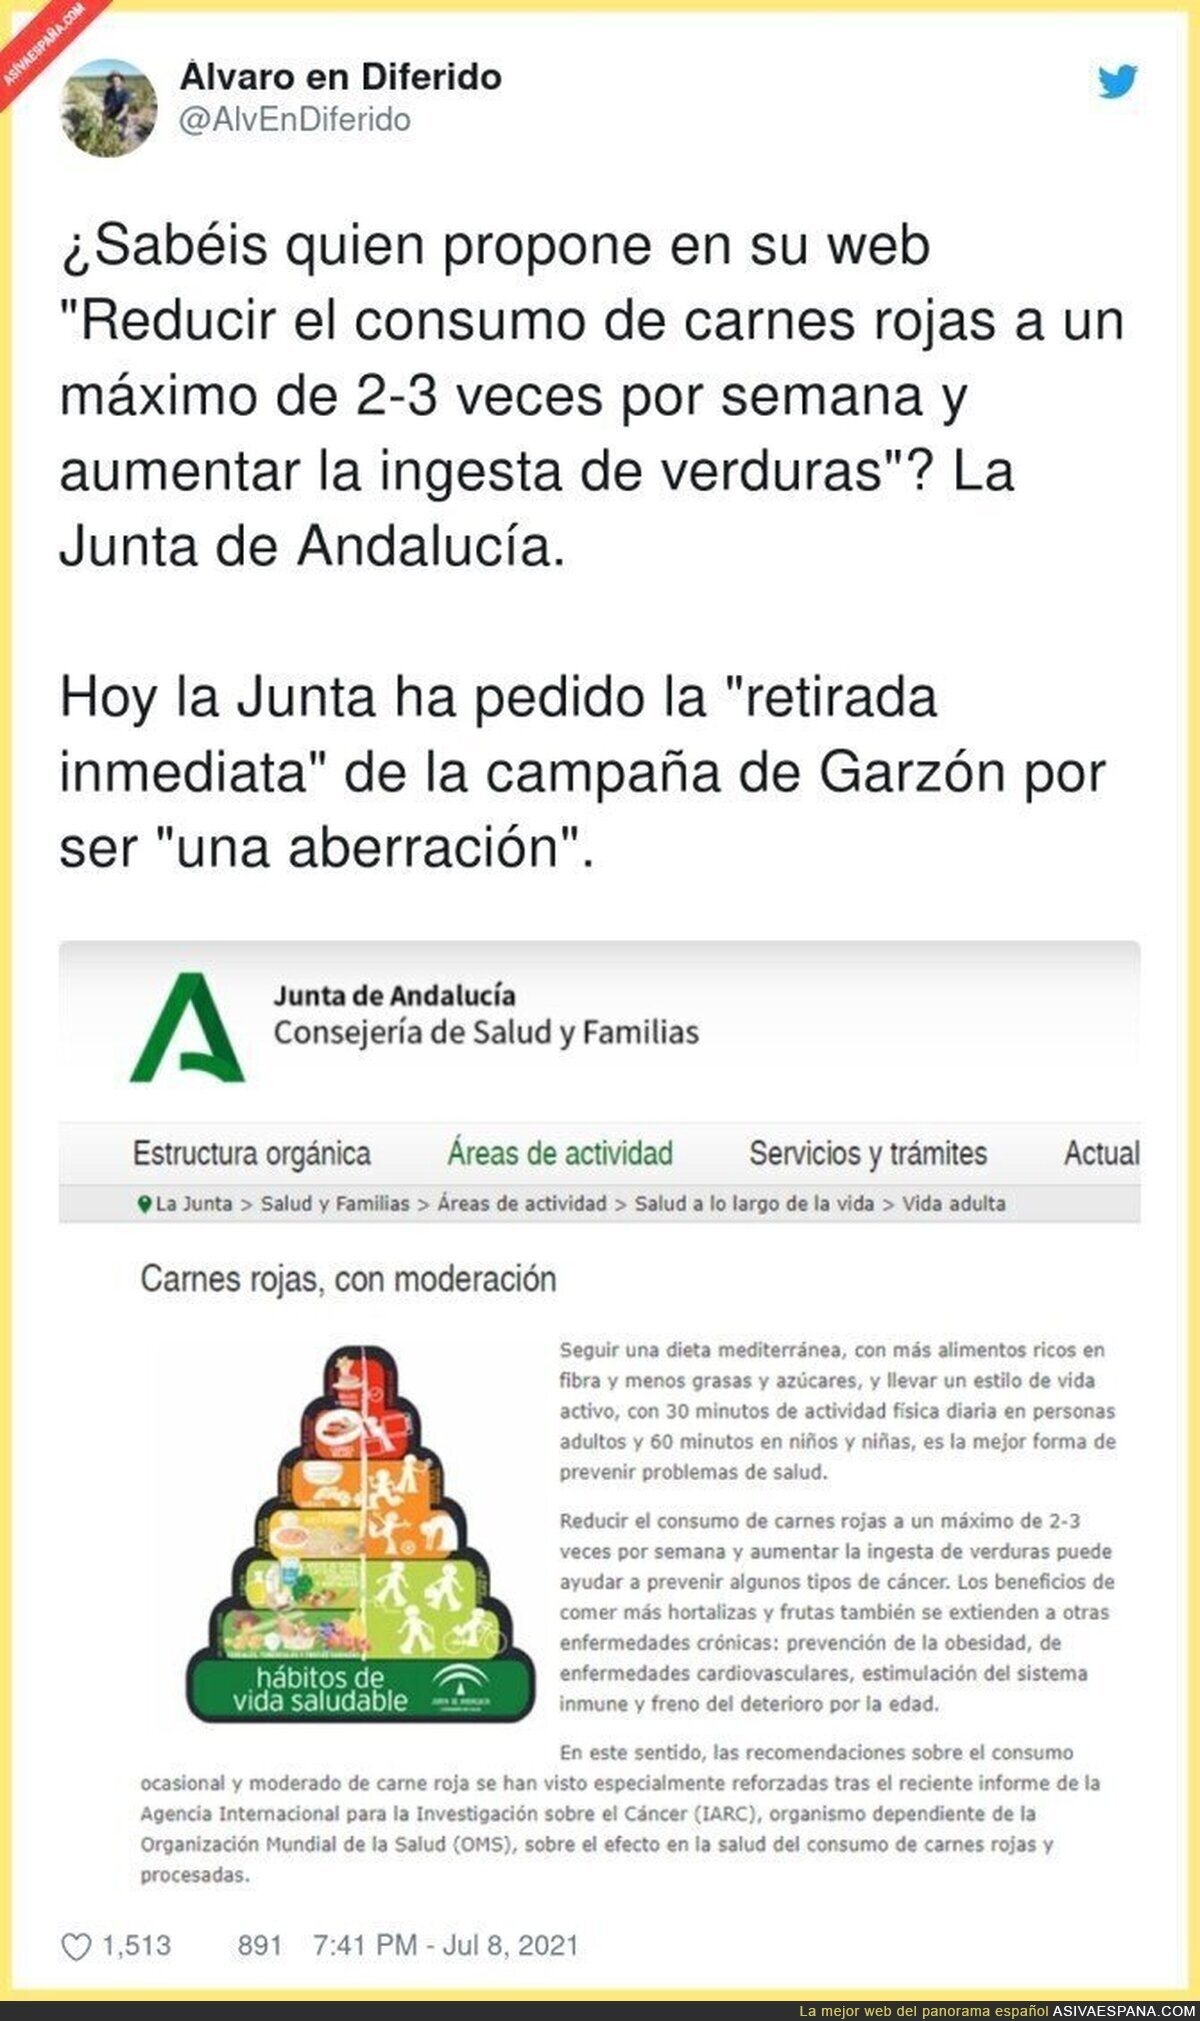 La desvergüenza total de la Junta de Andalucía cuando ellos proponen lo mismo que Alberto Garzón